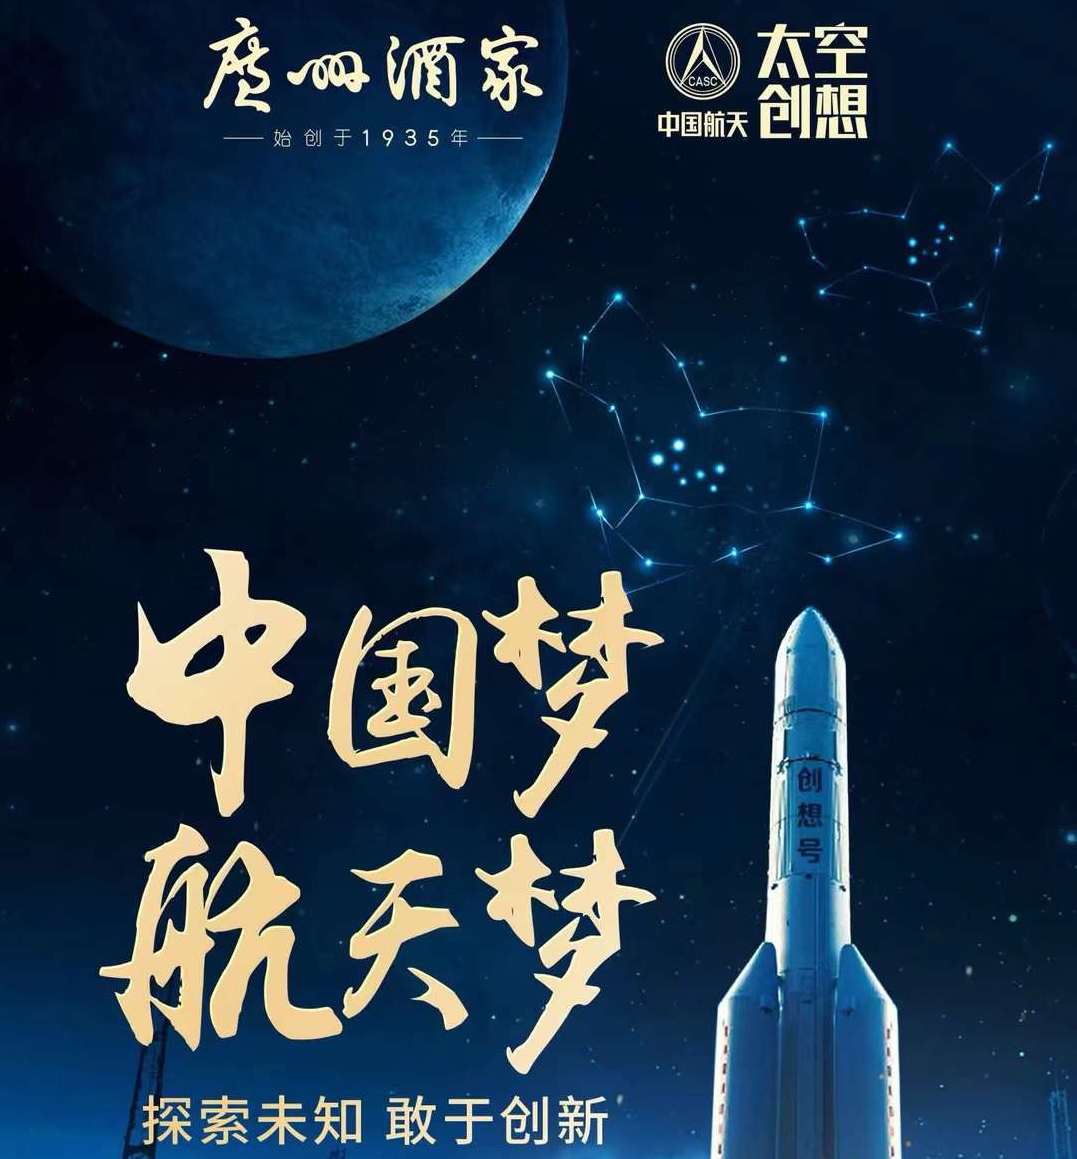 今天是中国航天日，探索浩瀚宇宙，我们永不止步。广州酒家是这种探索精神的“课代表”，坚持传承和创新，87载初心不移，只为将正宗广式月饼发扬世界